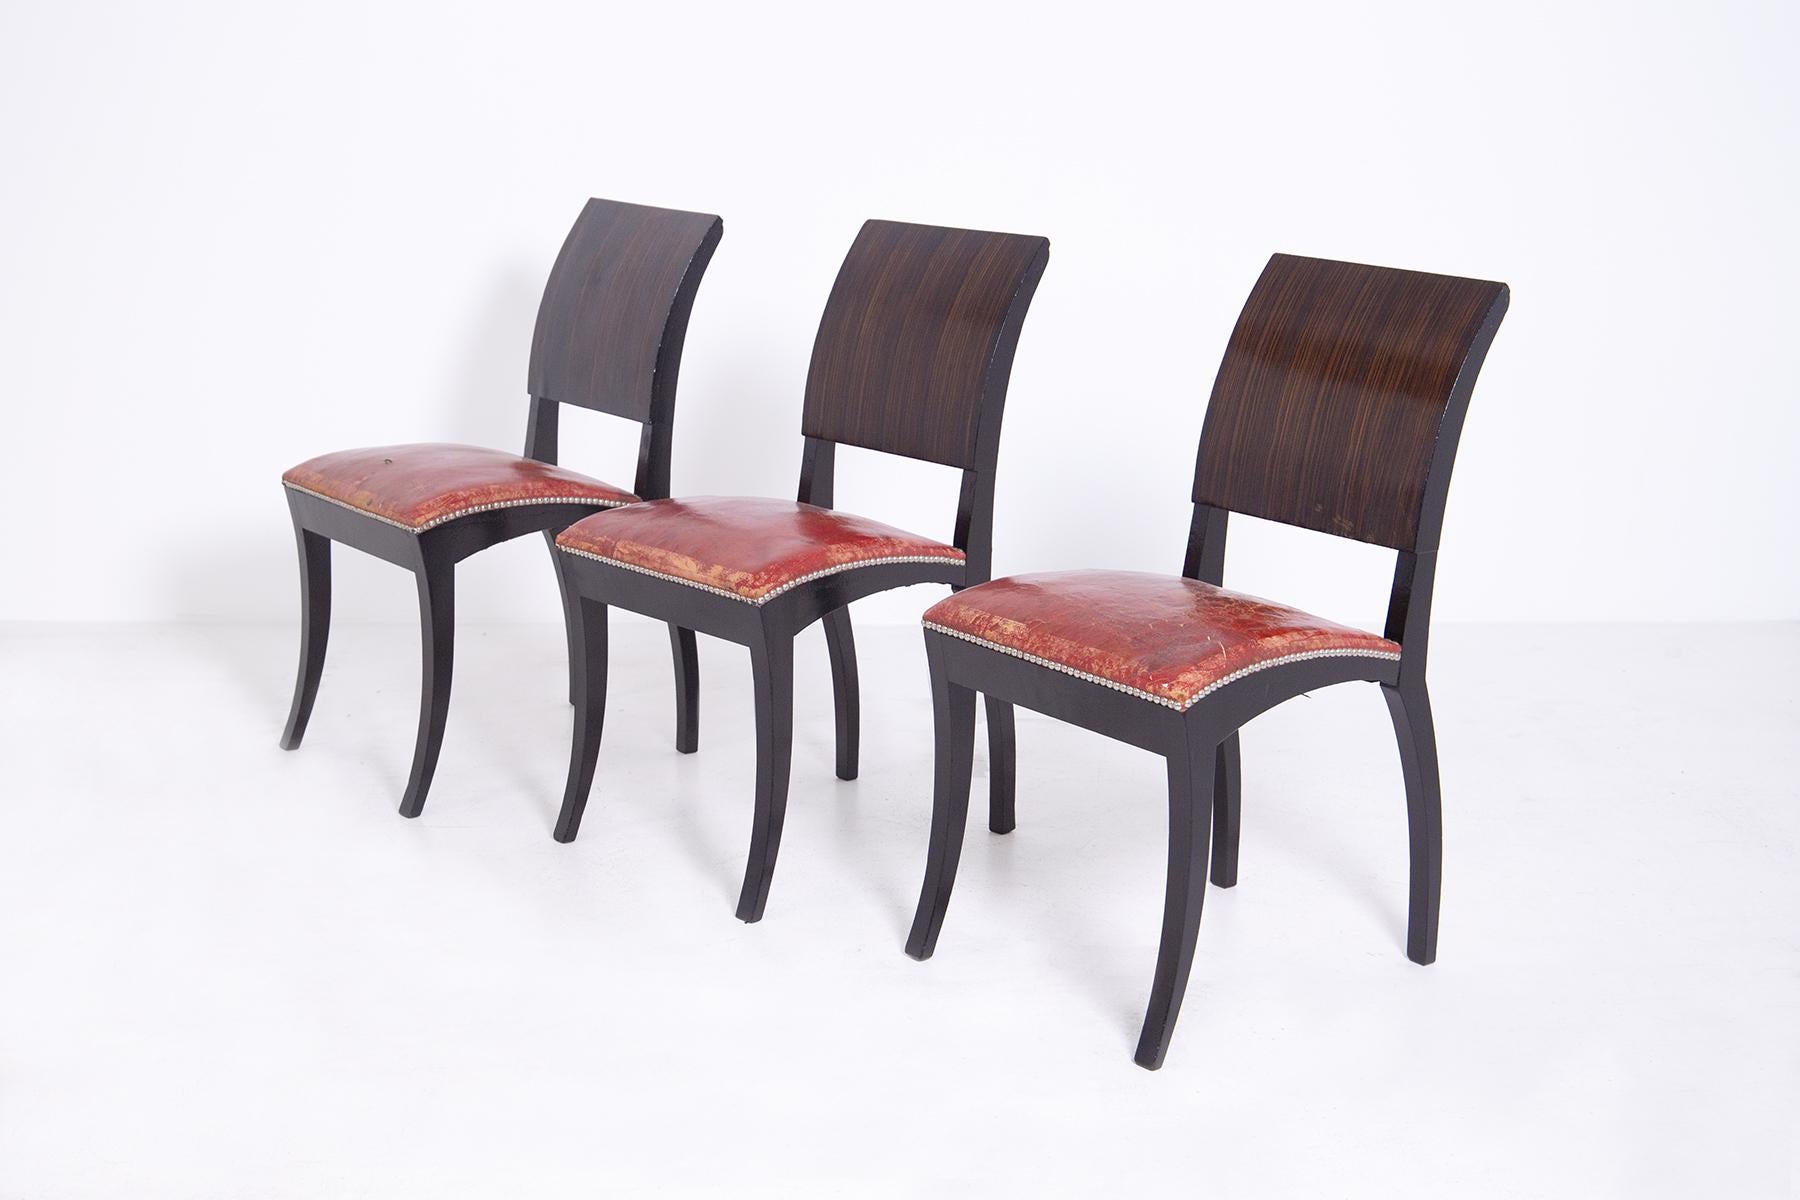 Merveilleux ensemble composé de six chaises françaises Art Déco des années 1920-1930.
La structure des chaises françaises a été réalisée en bois massif et fin, le siège est en cuir rouge et les côtés ont été appliqués de clous.
Les caractéristiques